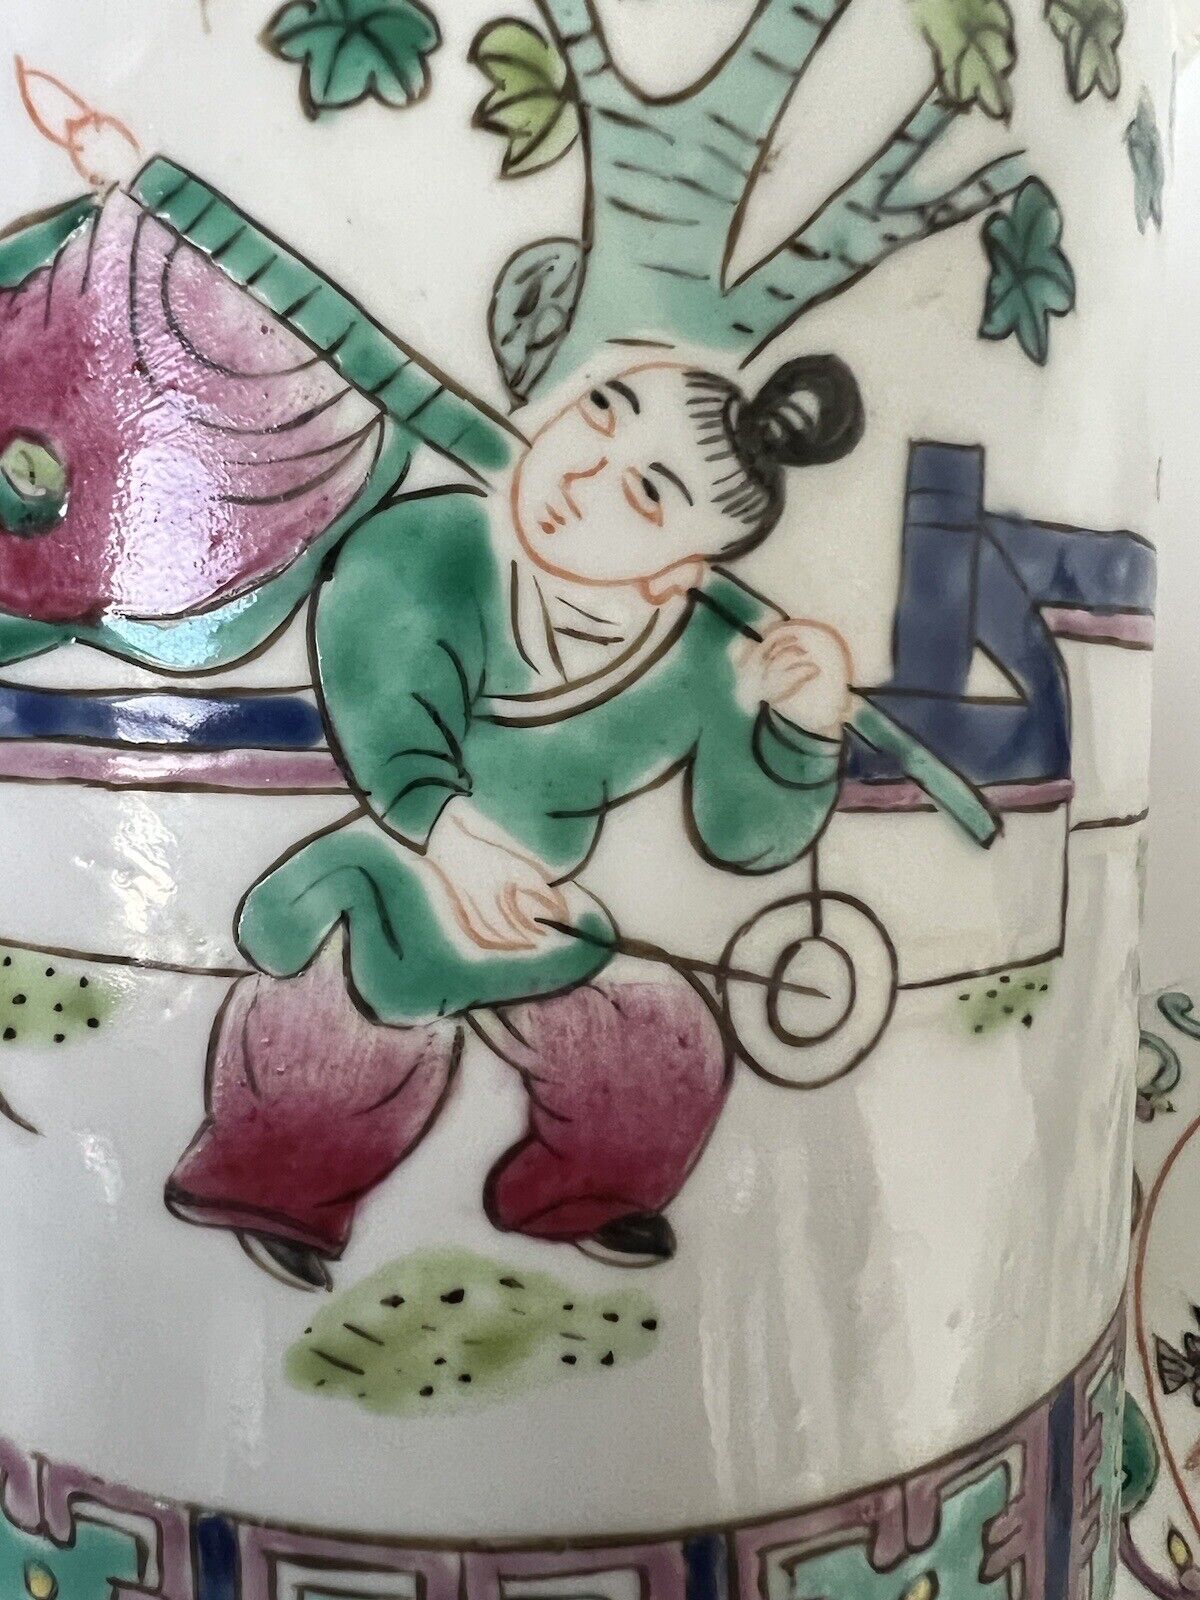 2 Antique Chinese Hand Paint Dragon Children Cylinder Hallmark Famille Jars 6" Без бренда - фотография #12